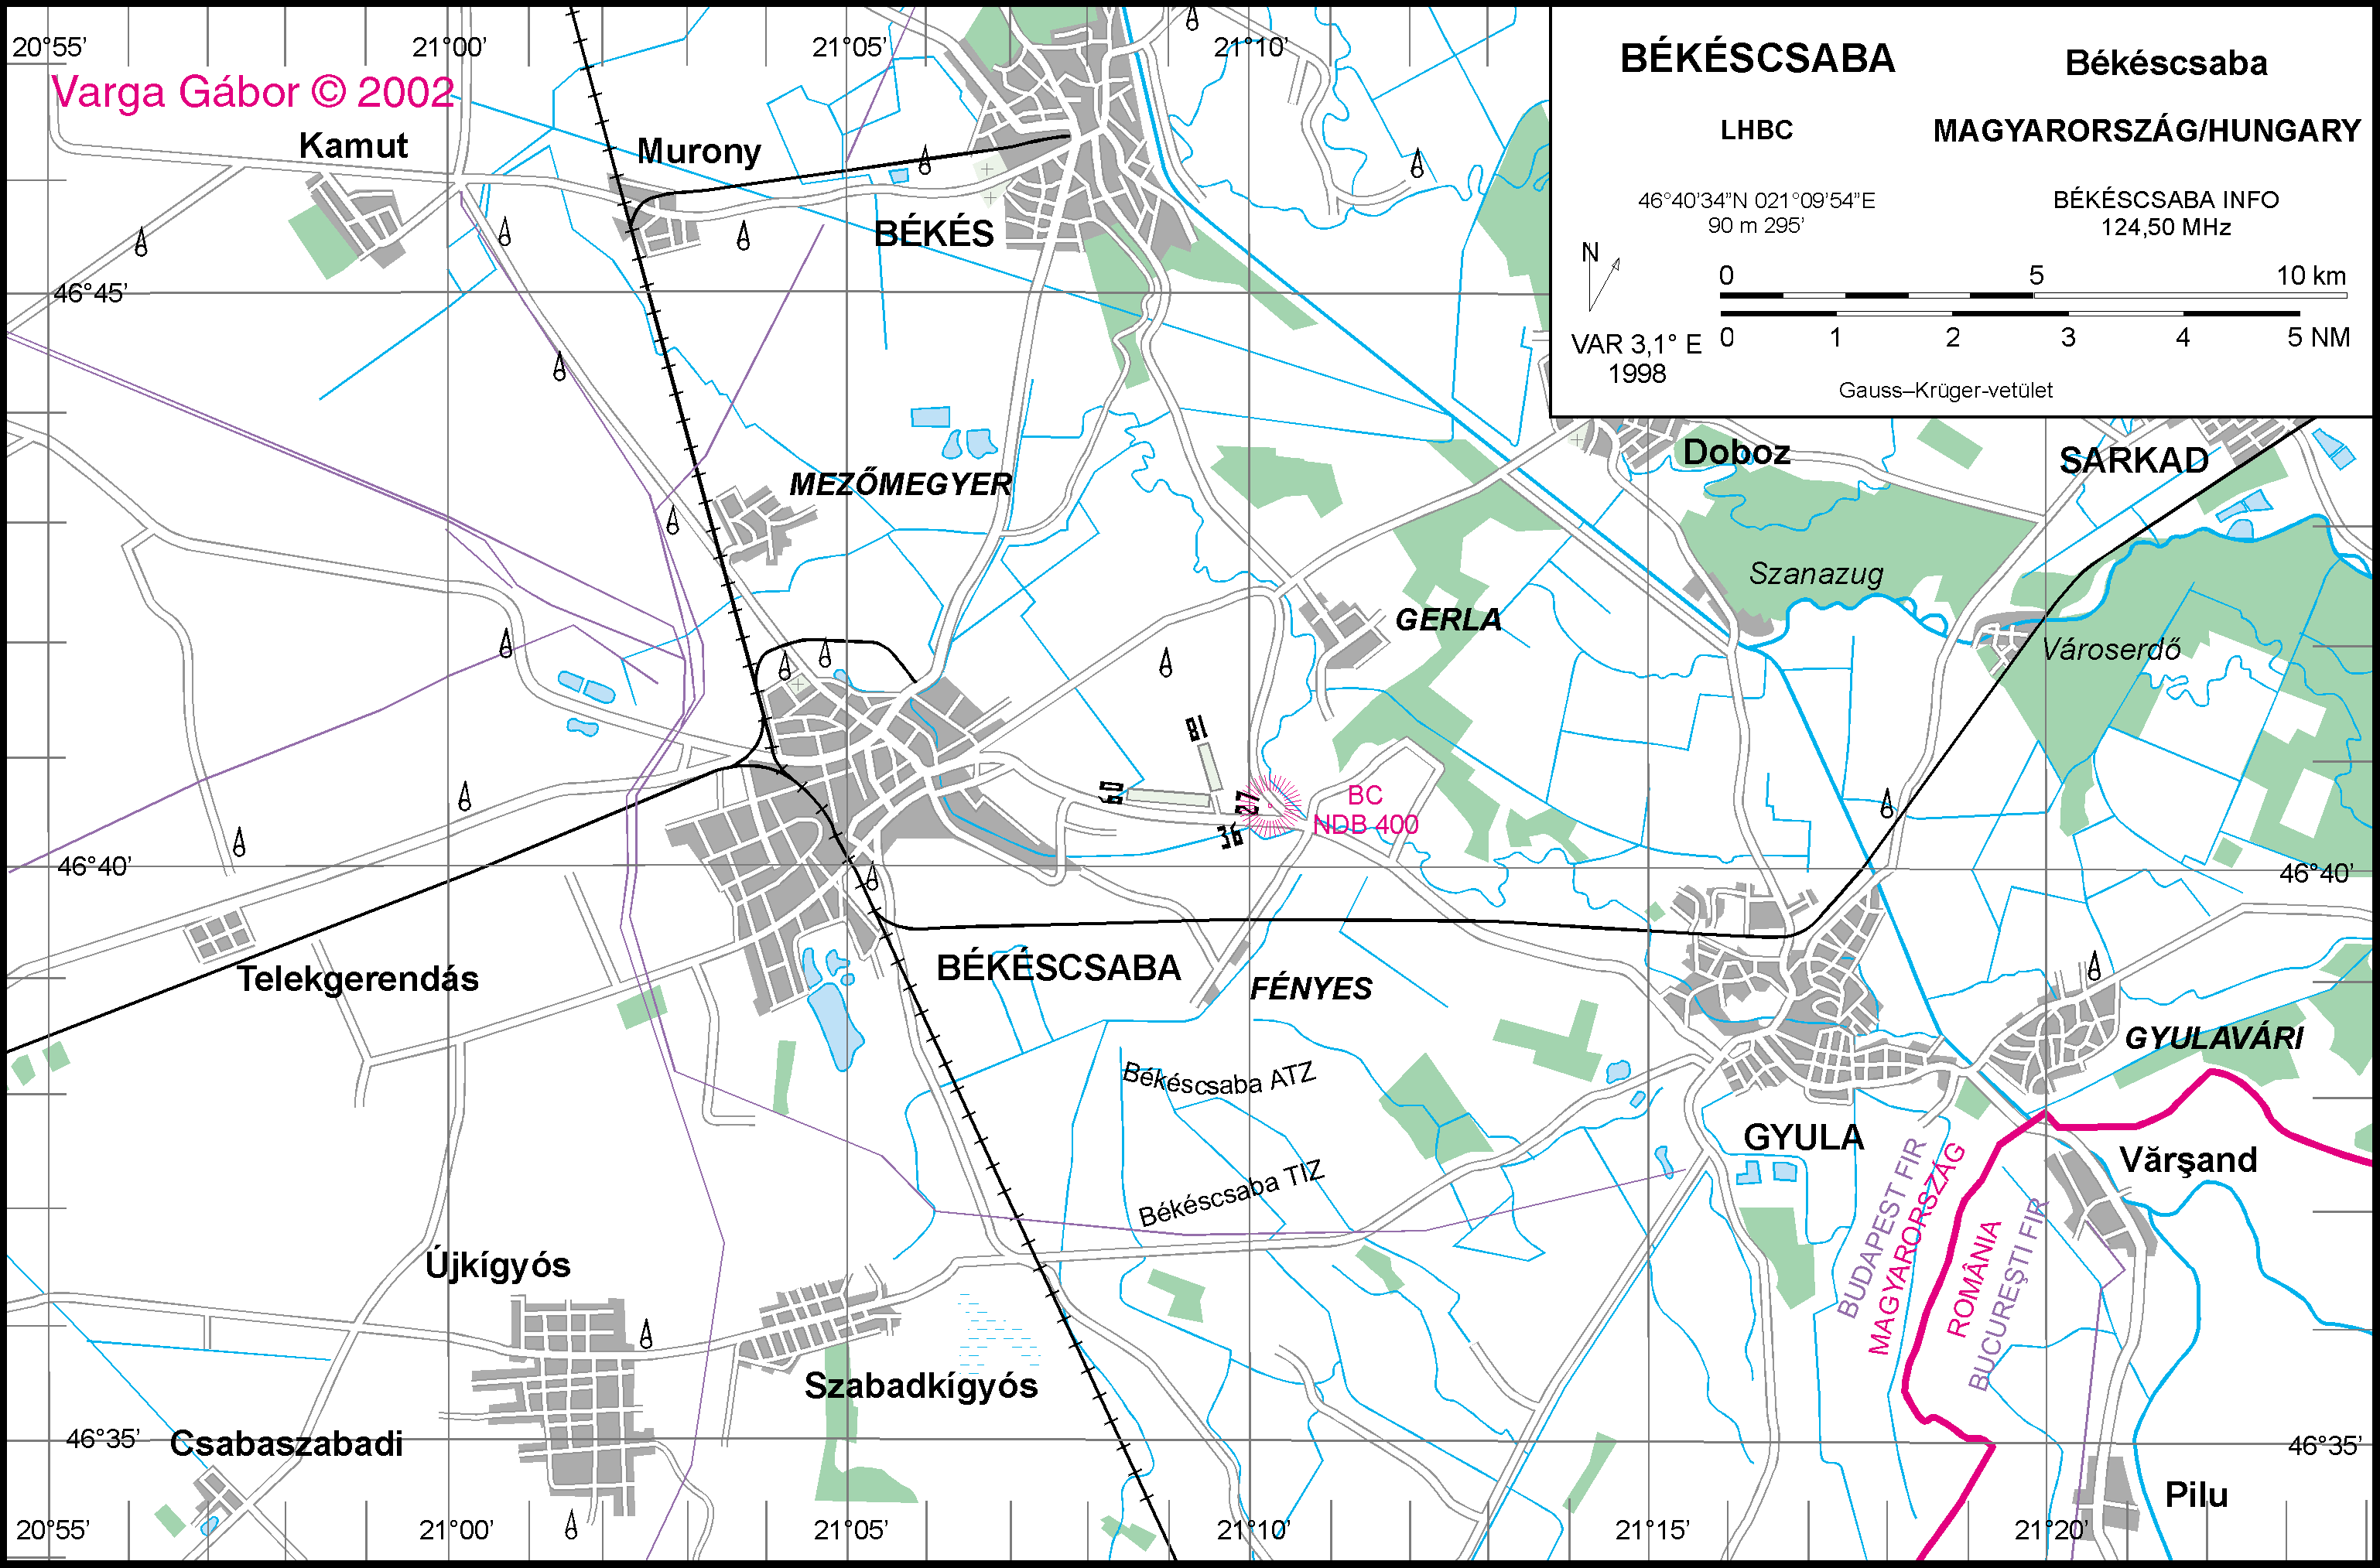 békéscsaba és környéke térkép Magyar repülõterek térképei / Maps of Hungarian airports békéscsaba és környéke térkép